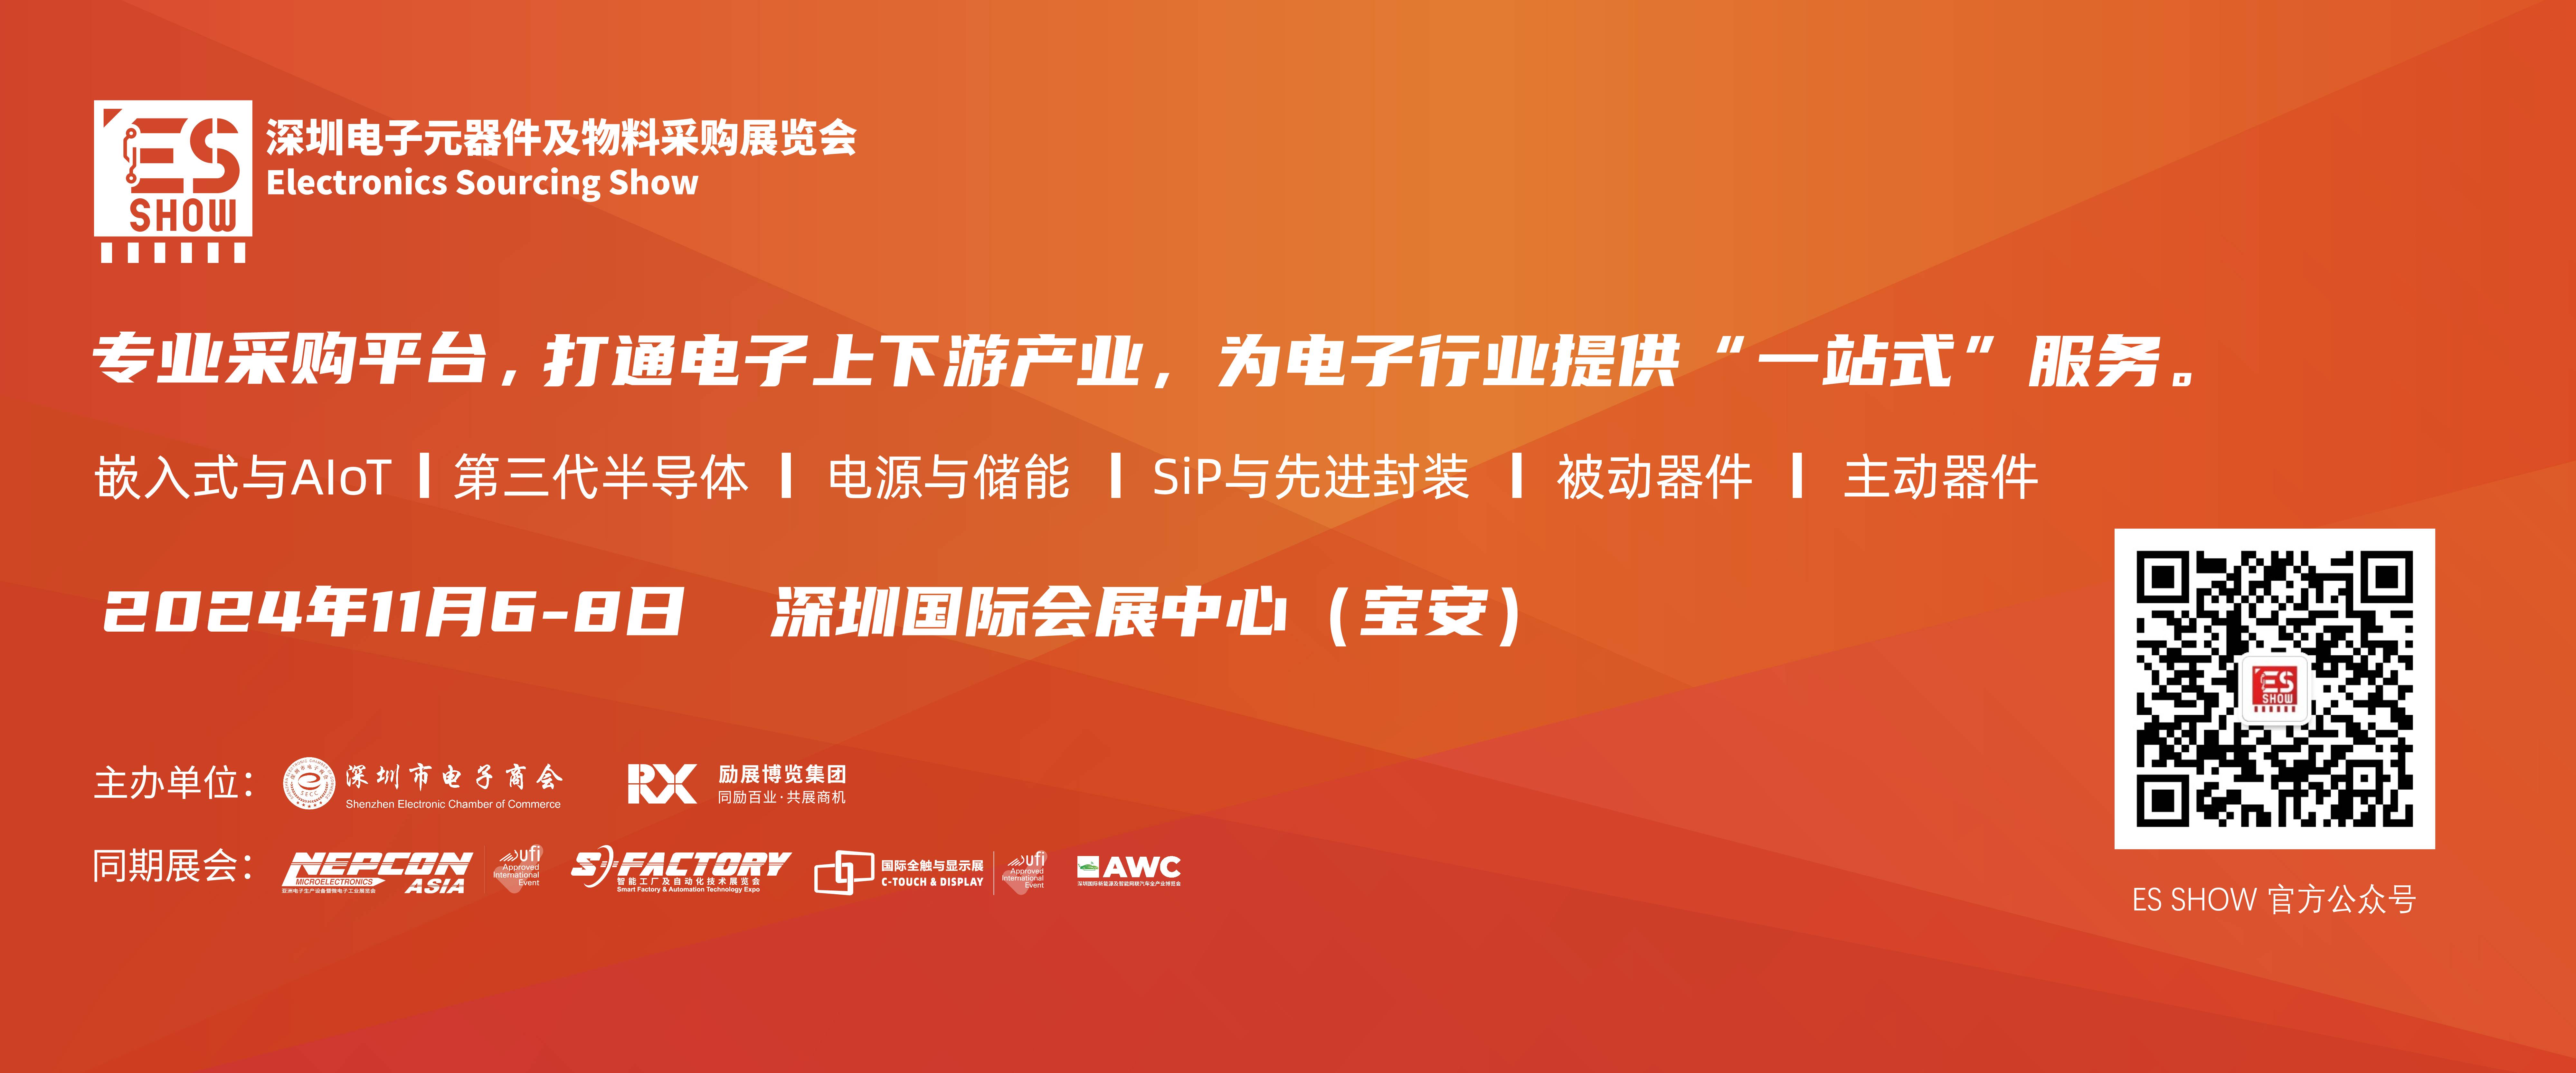 深圳电子展 华南电子展 机器人 芯片 IC 中国电子展